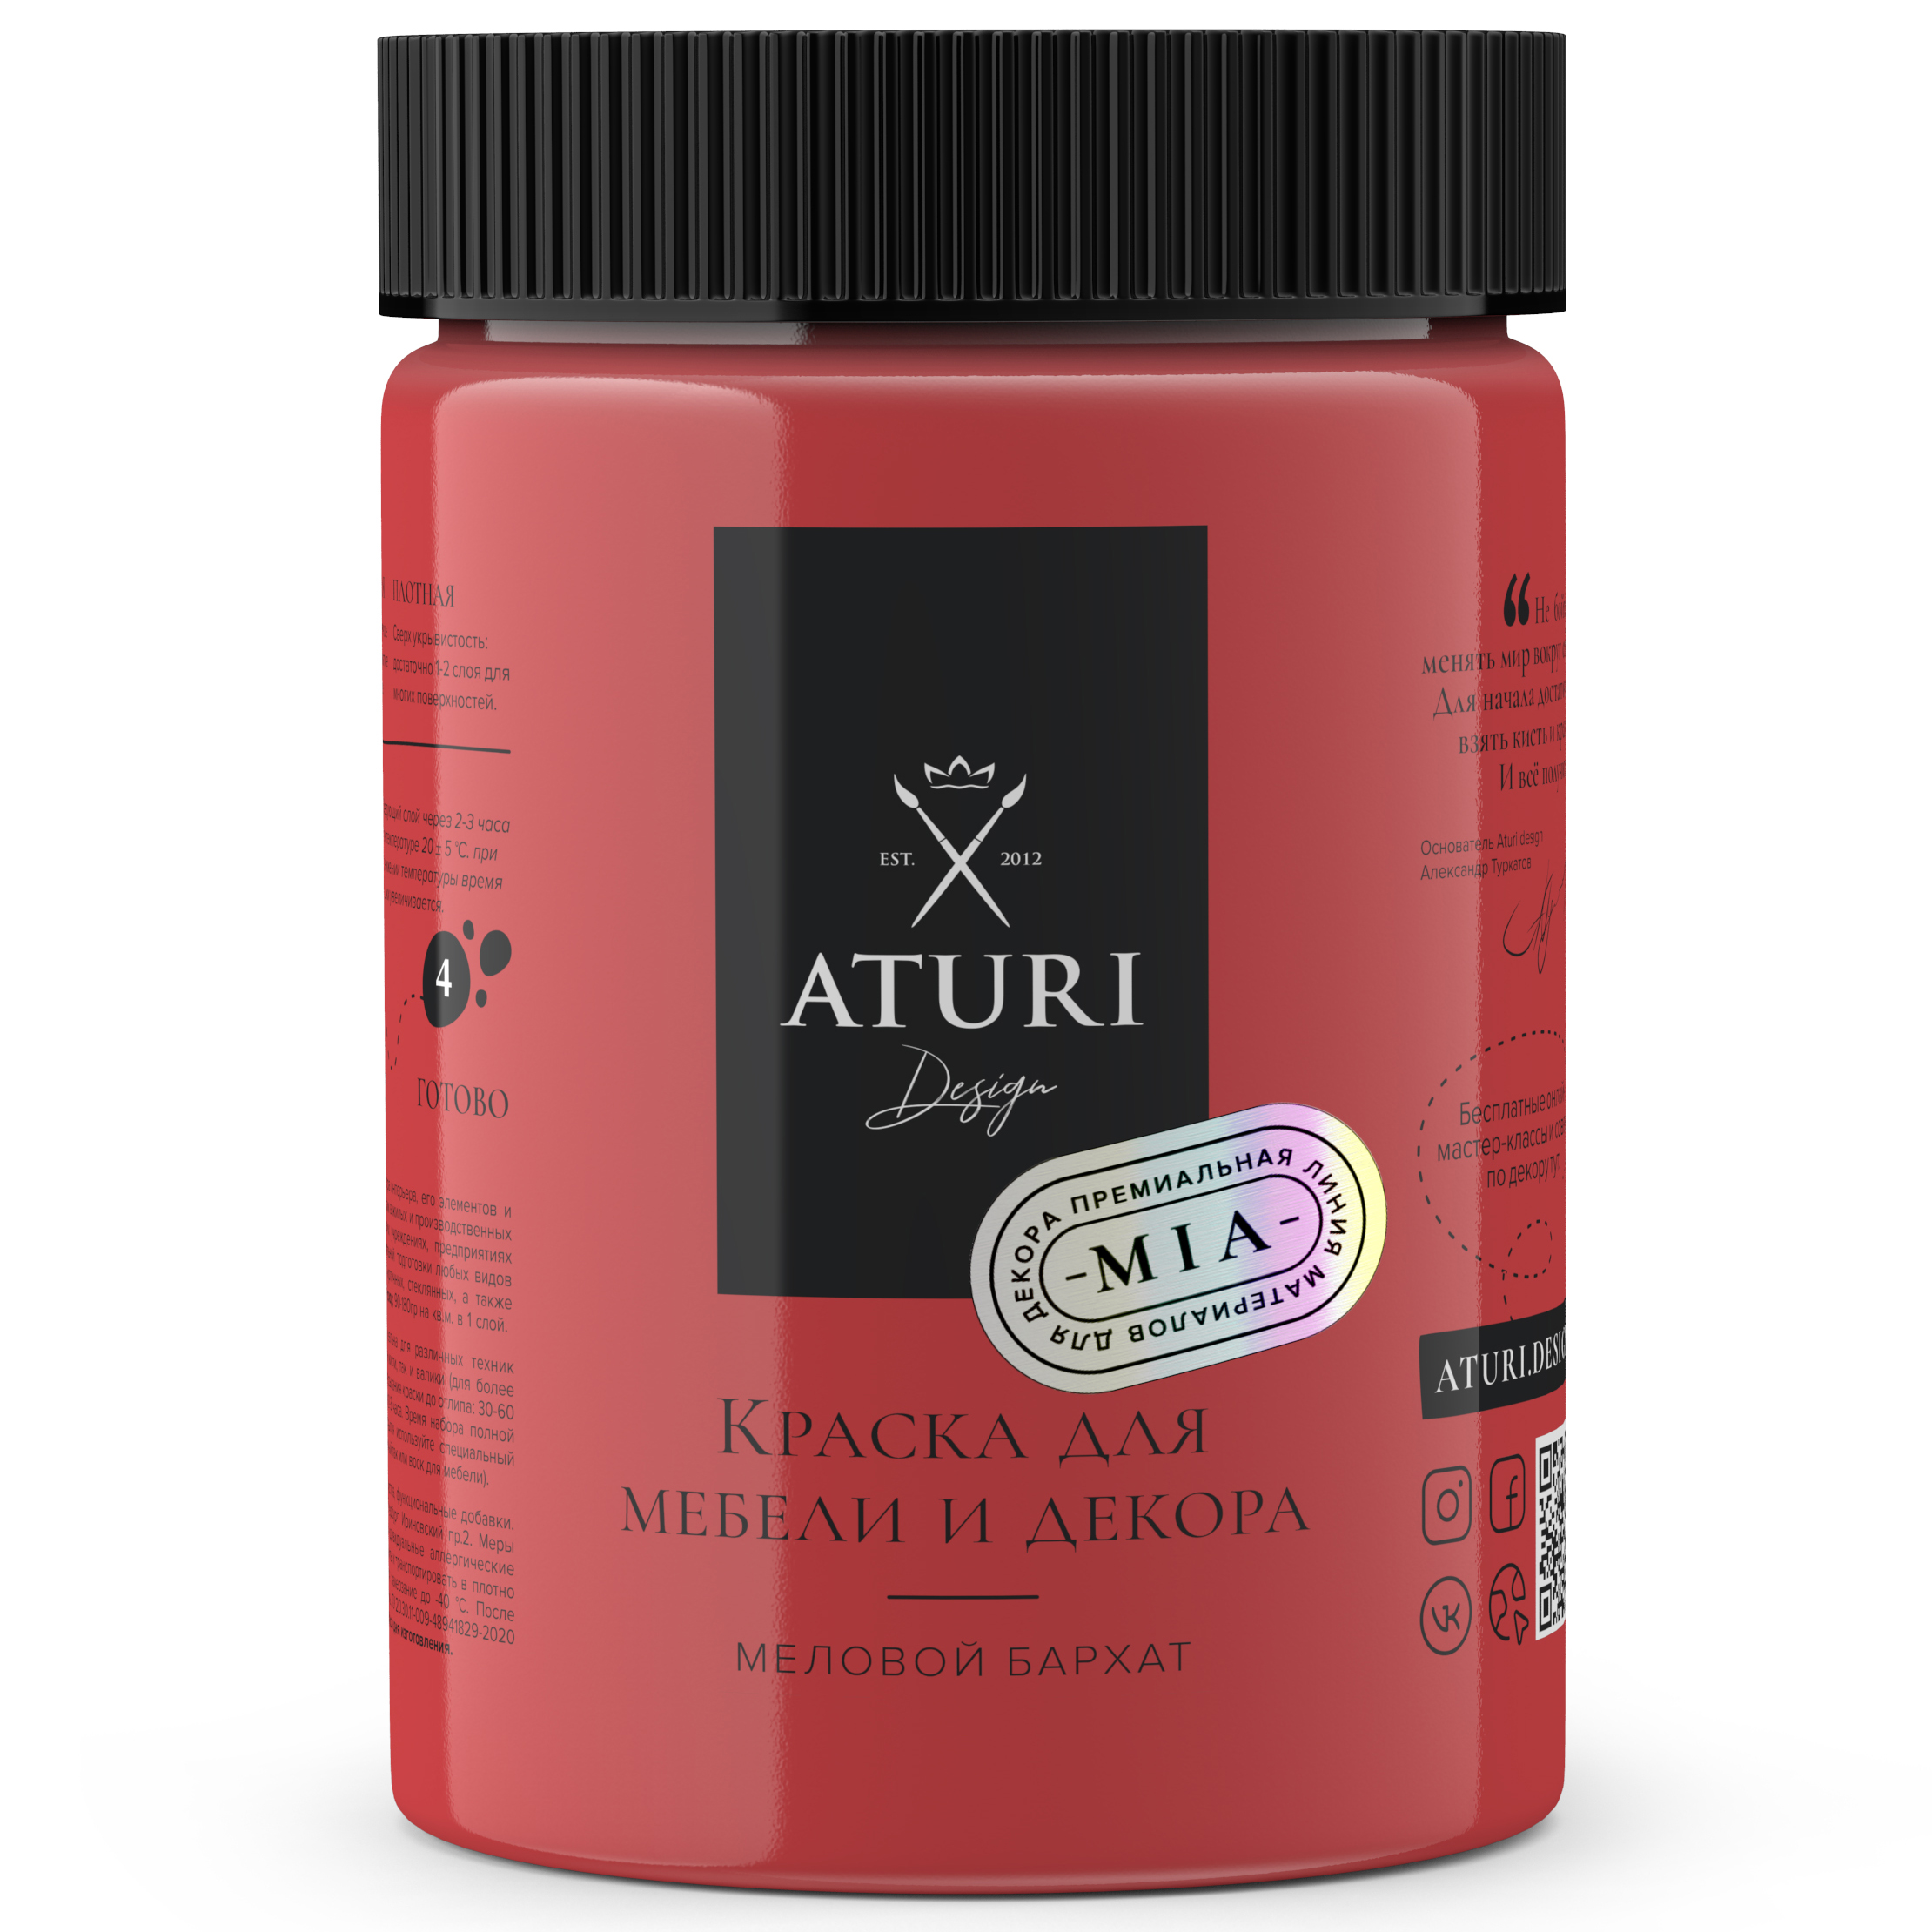 Краска Aturi Design Mia для мебели и декора, меловой бархат; Цвет: Красная помада, 830гр губная помада тон 111 амаранте